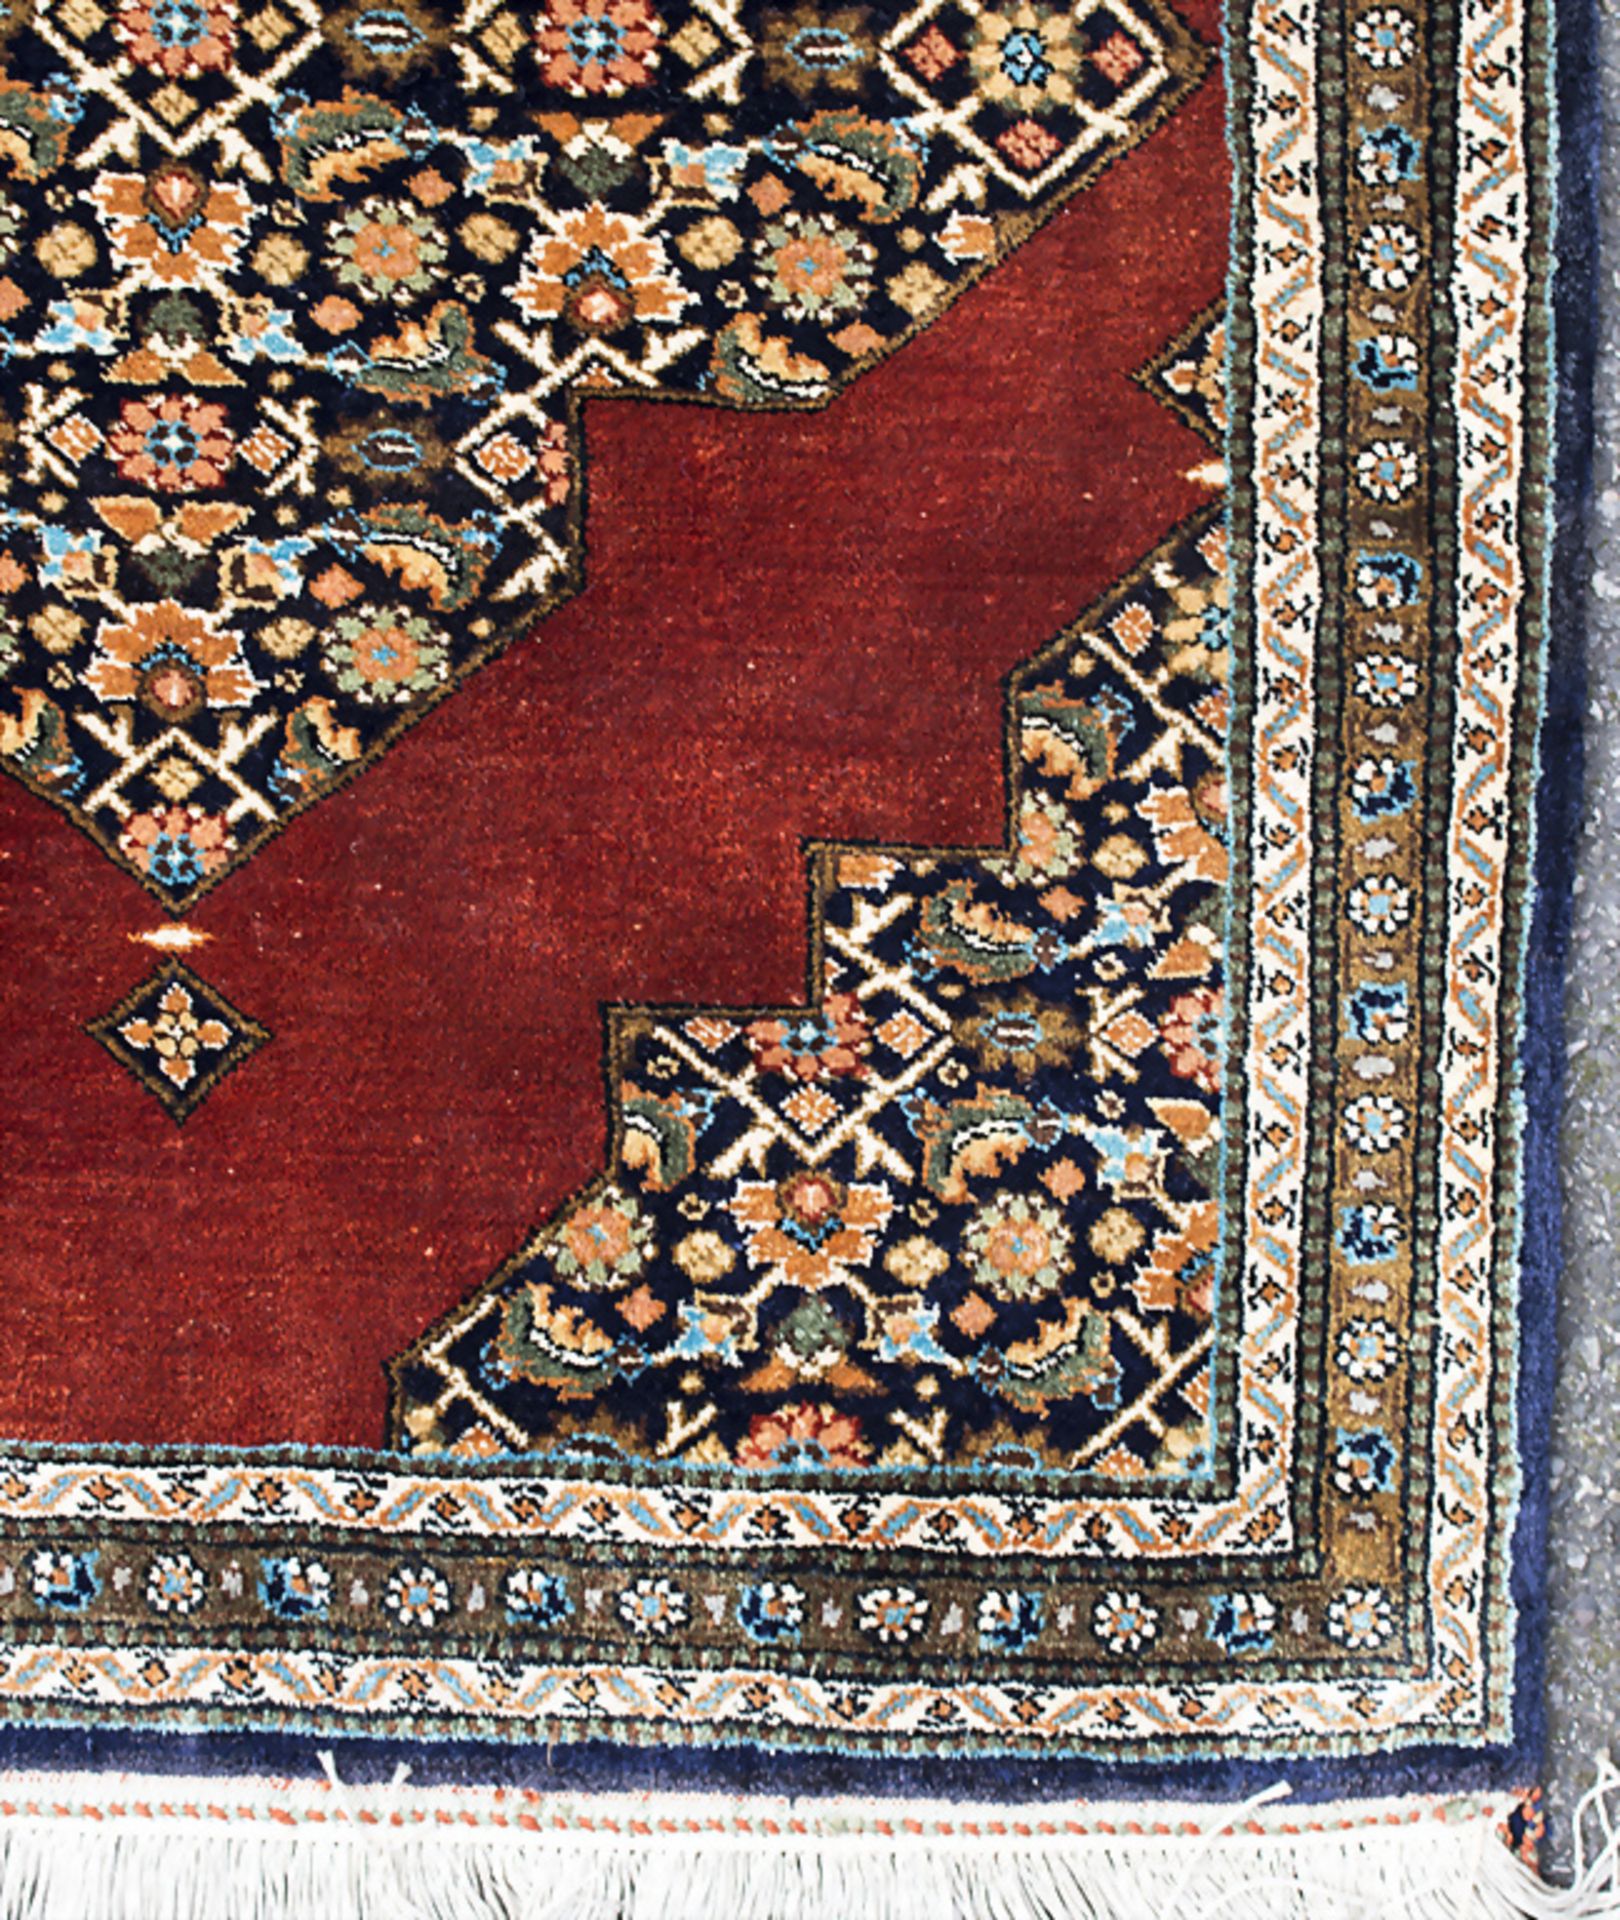 Seidenwandteppich / A silk wall carpet - Image 2 of 3